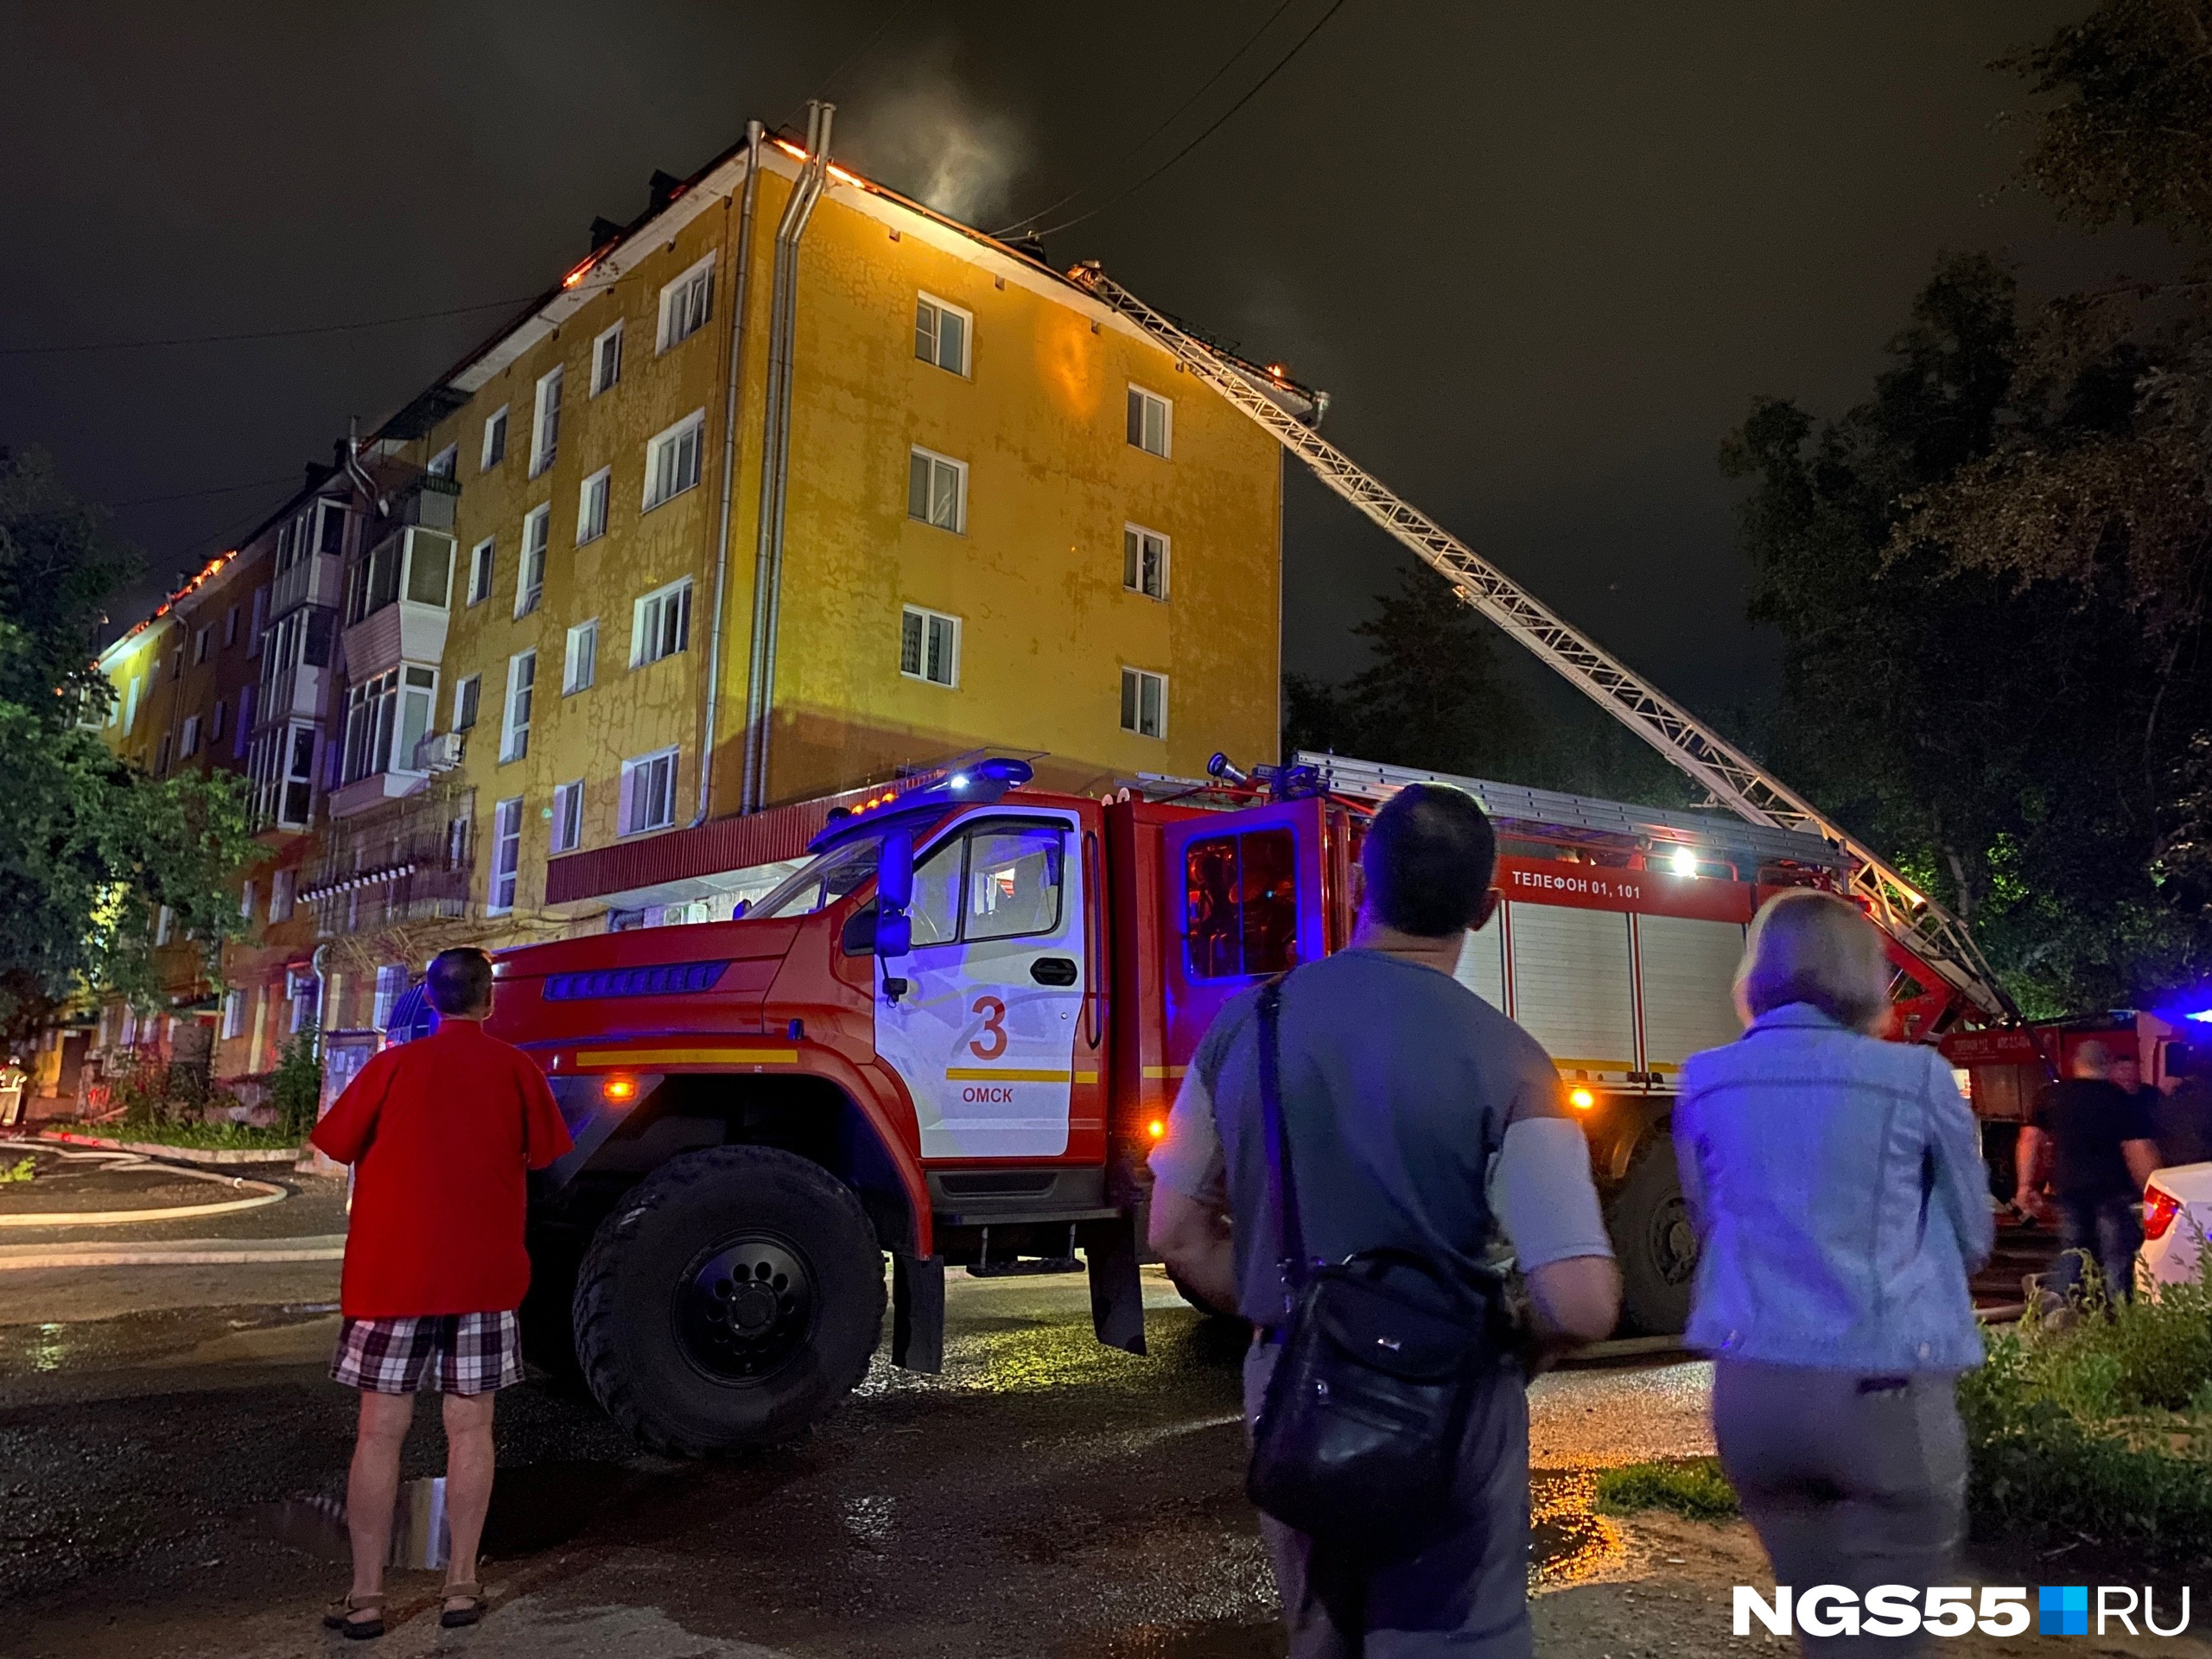 За пожаром и работой спасателей наблюдали жители дома, а также очевидцы, проходившие мимо